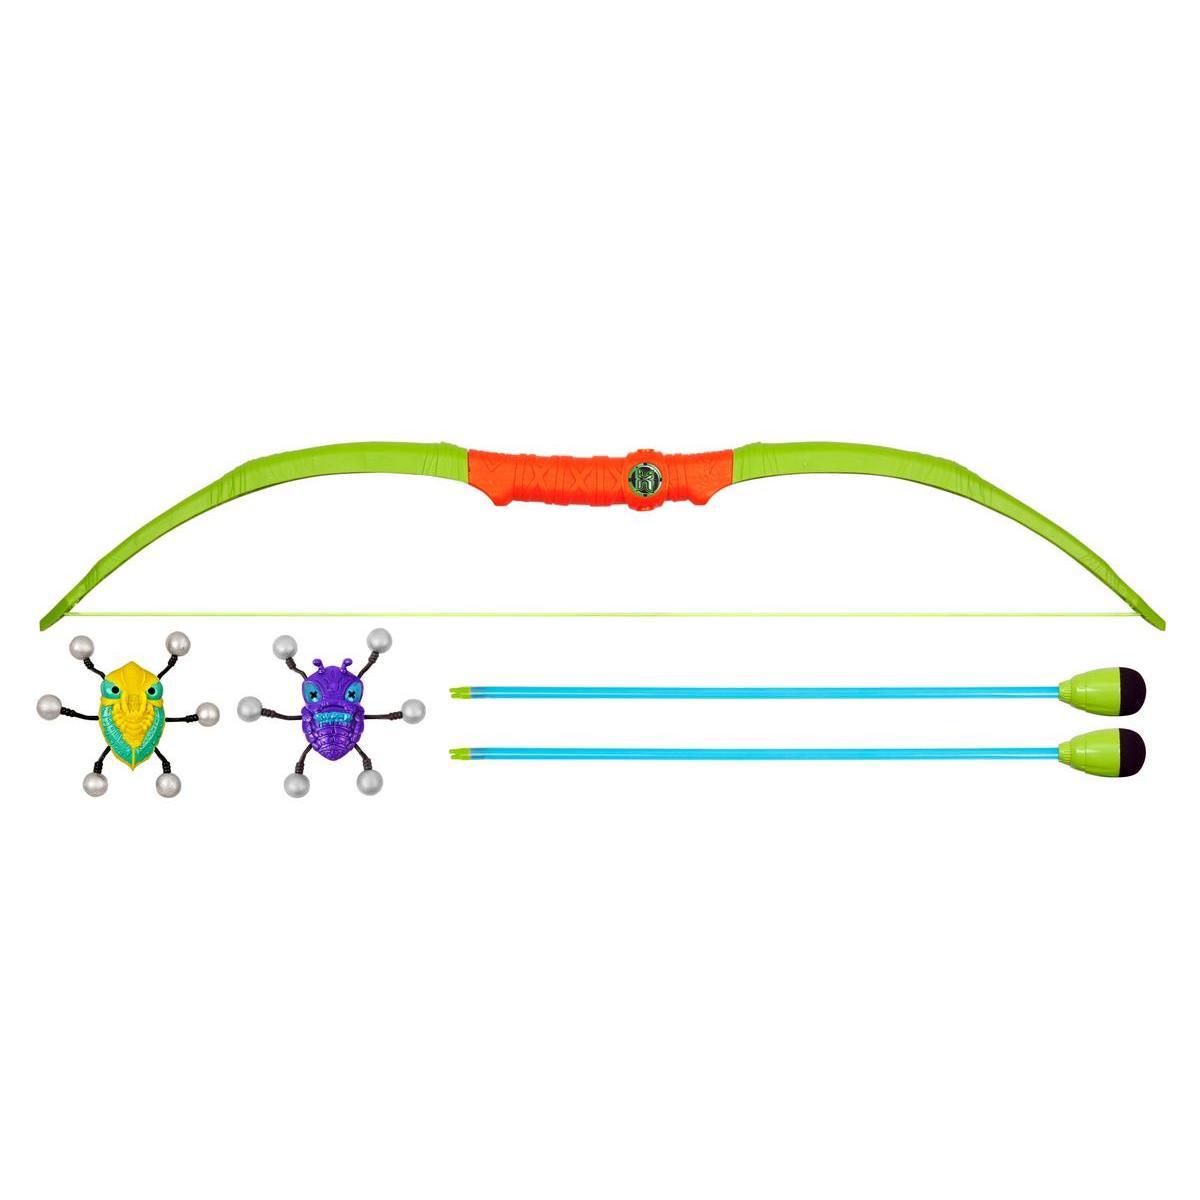 Arc Bug Attack et accessoires - Plastique - 4 x 70 x 21 cm - Vert, orange et bleu